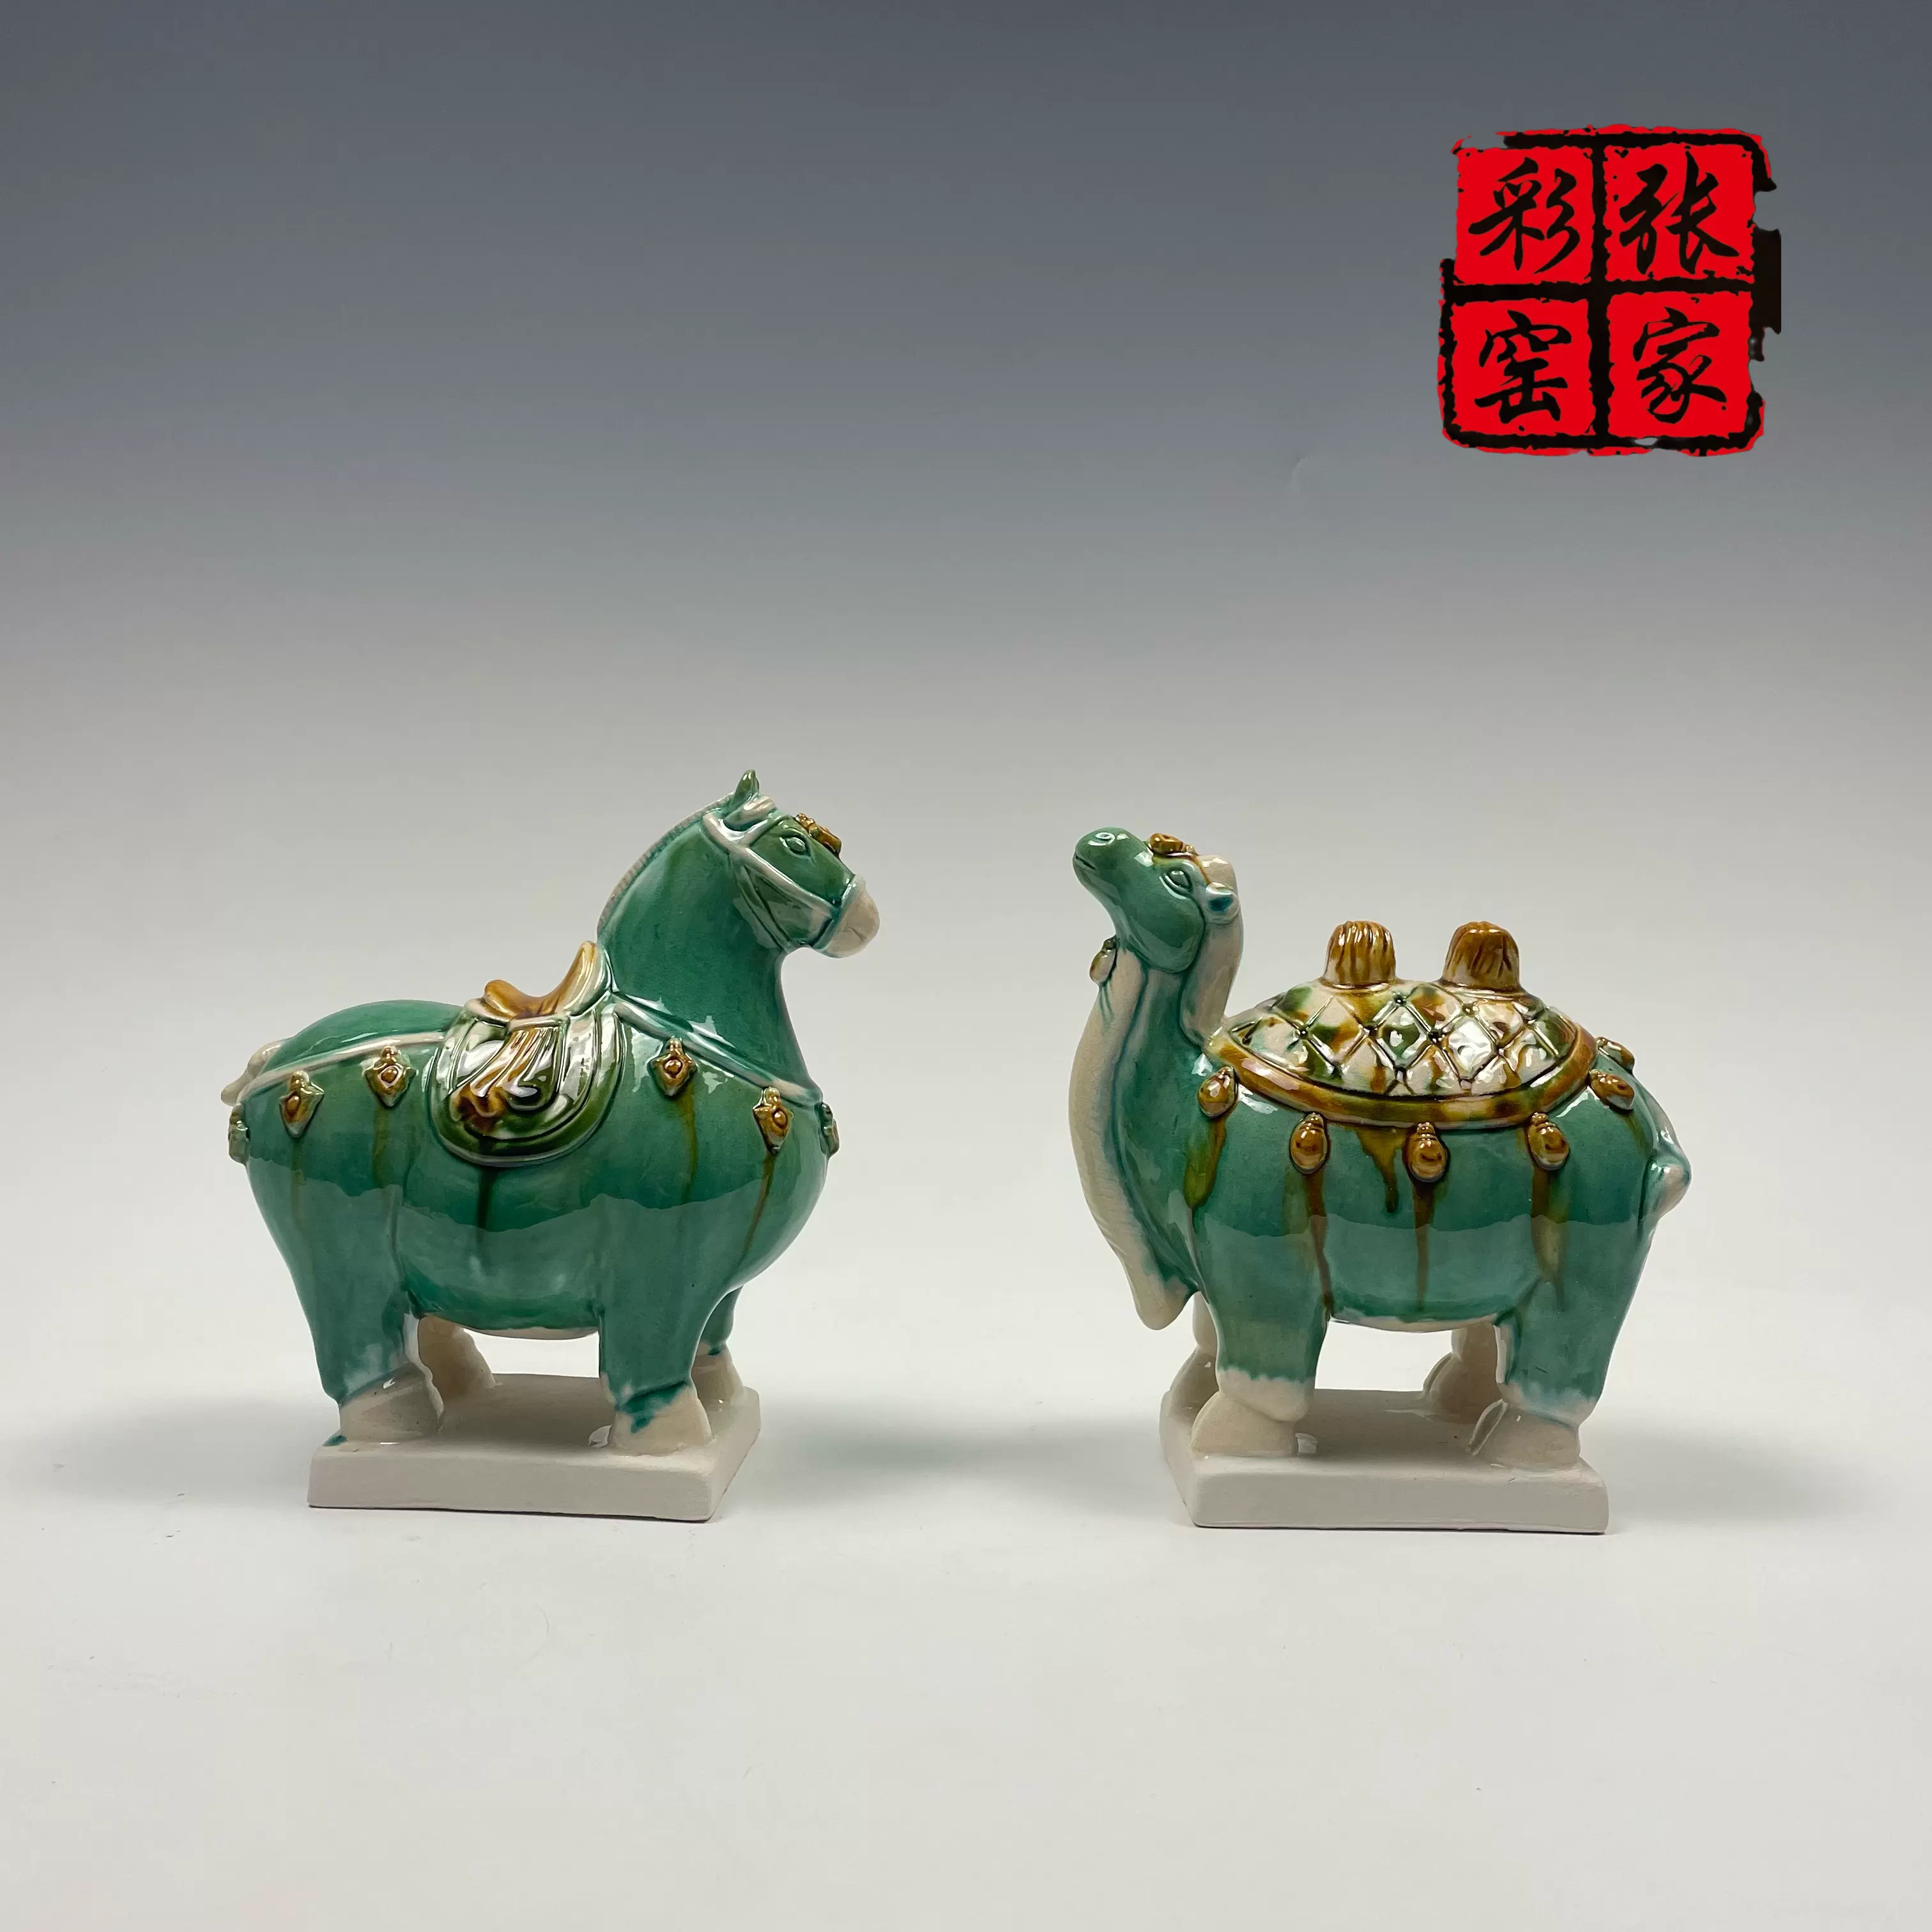 唐三彩駱駝，高66釐米，張二孬老師傳統三彩，收藏品，藝術品。-Taobao